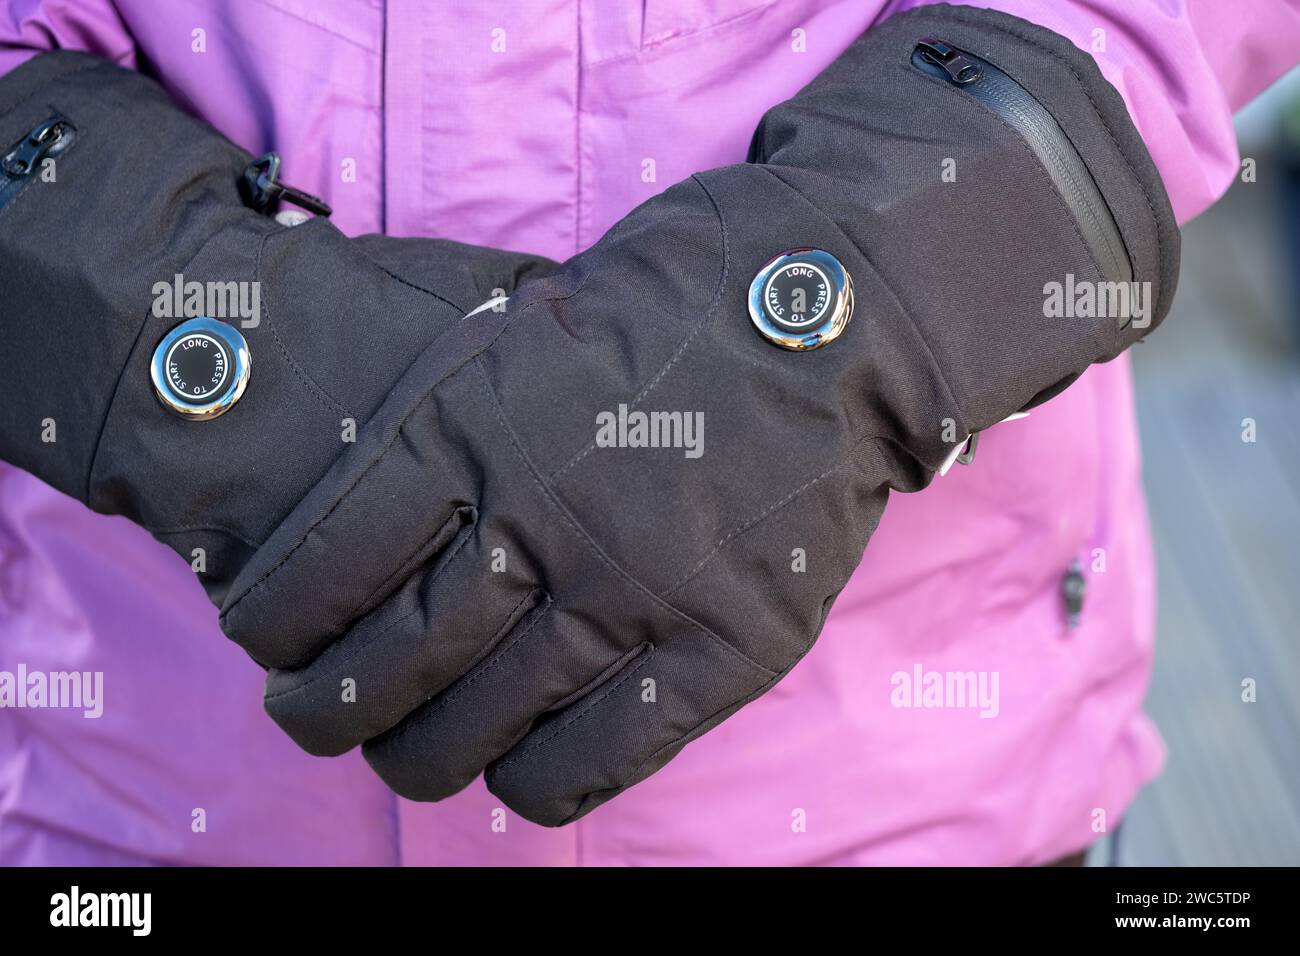 Una mujer con guantes calentados por batería durante el clima frío. Los guantes tienen ajustes de calor variables y ayudan a aquellos que sufren de la enfermedad de Reynauds Foto de stock